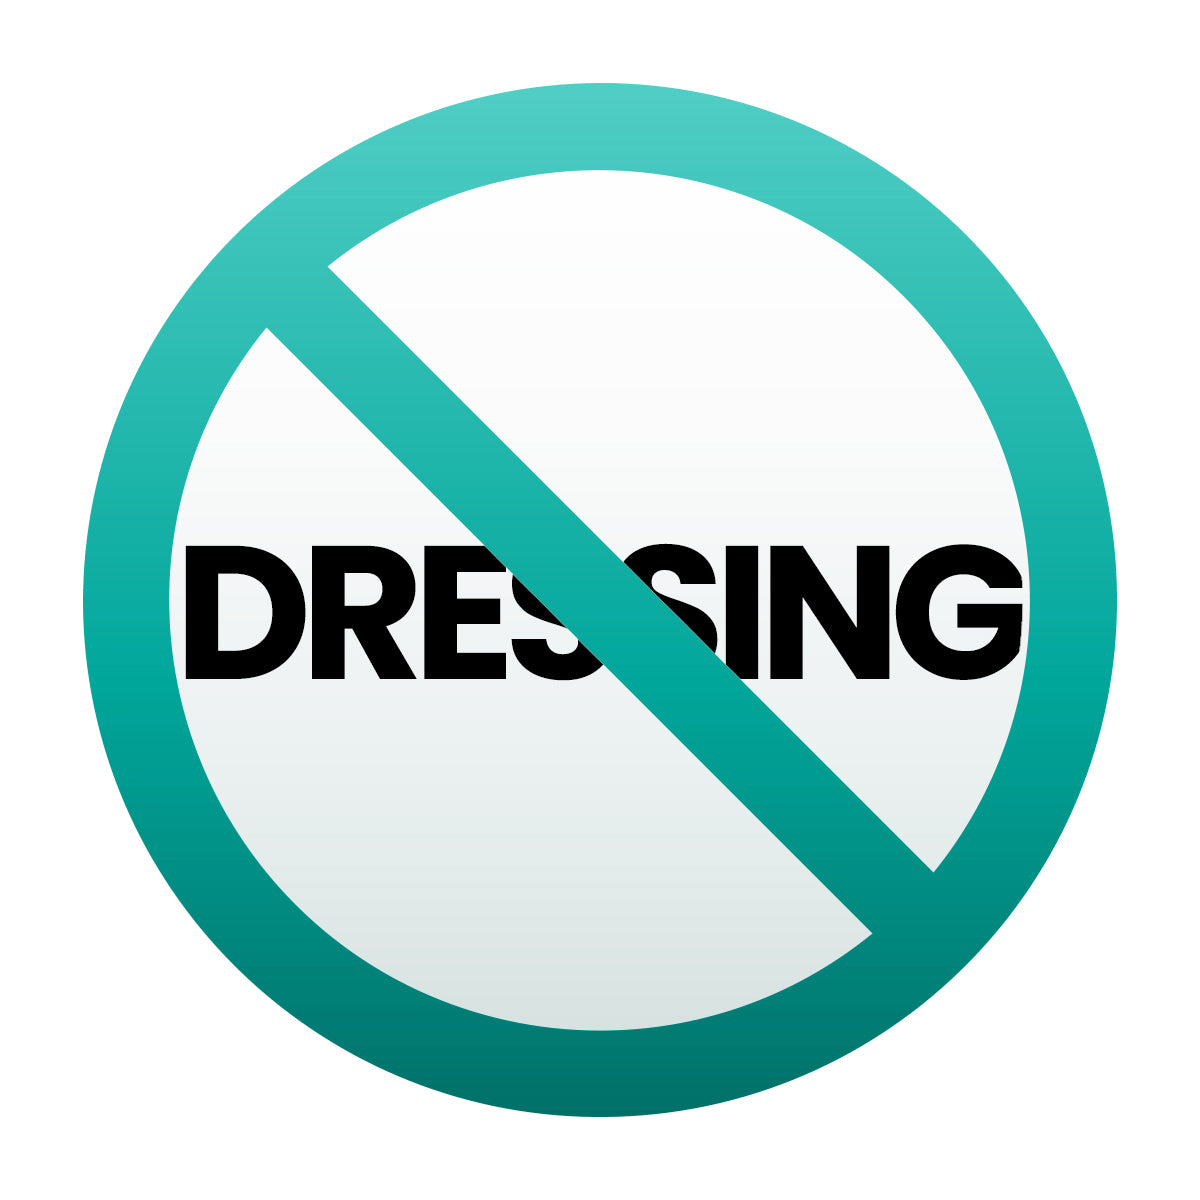 No Dressing